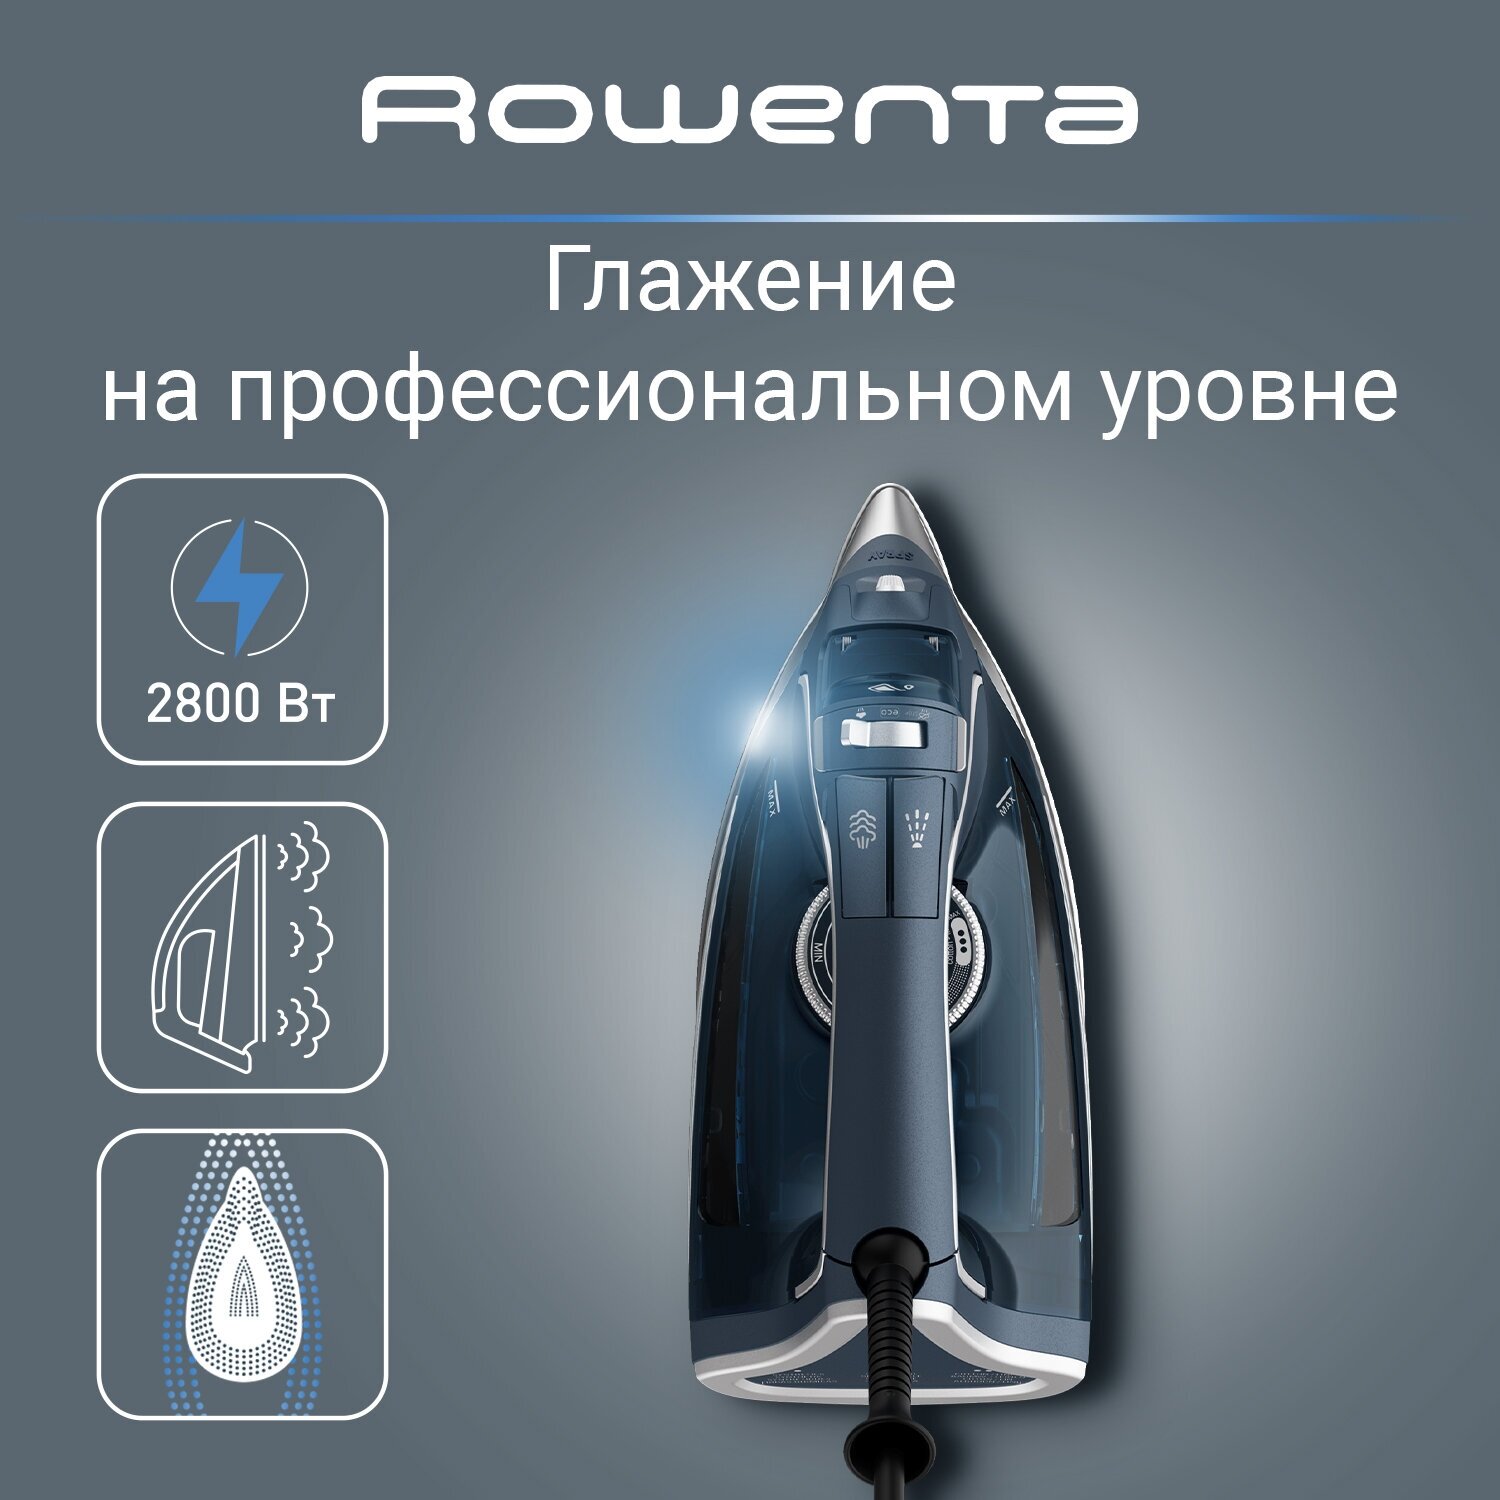 Паровой утюг Rowenta Pro Master DW8221D1 синий мощность 2800 Вт паровой удар 200 г/мин вертикальное отпаривание автоотключение